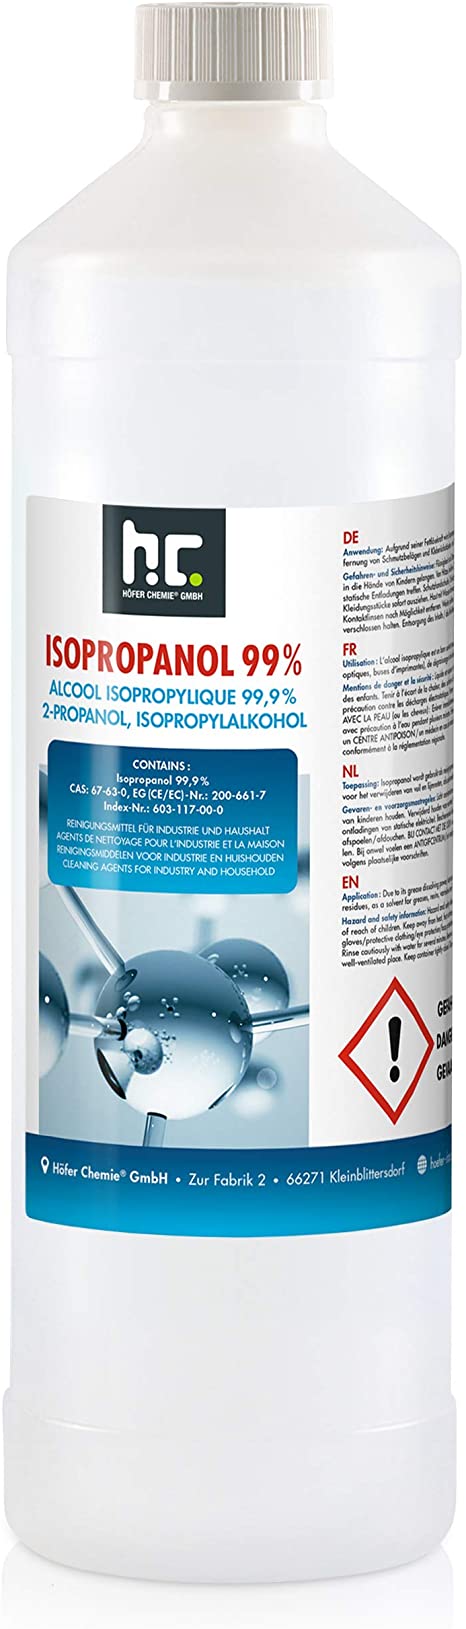 Alcool isopropylique (ipda) nettoyant, désinfectant pour collage